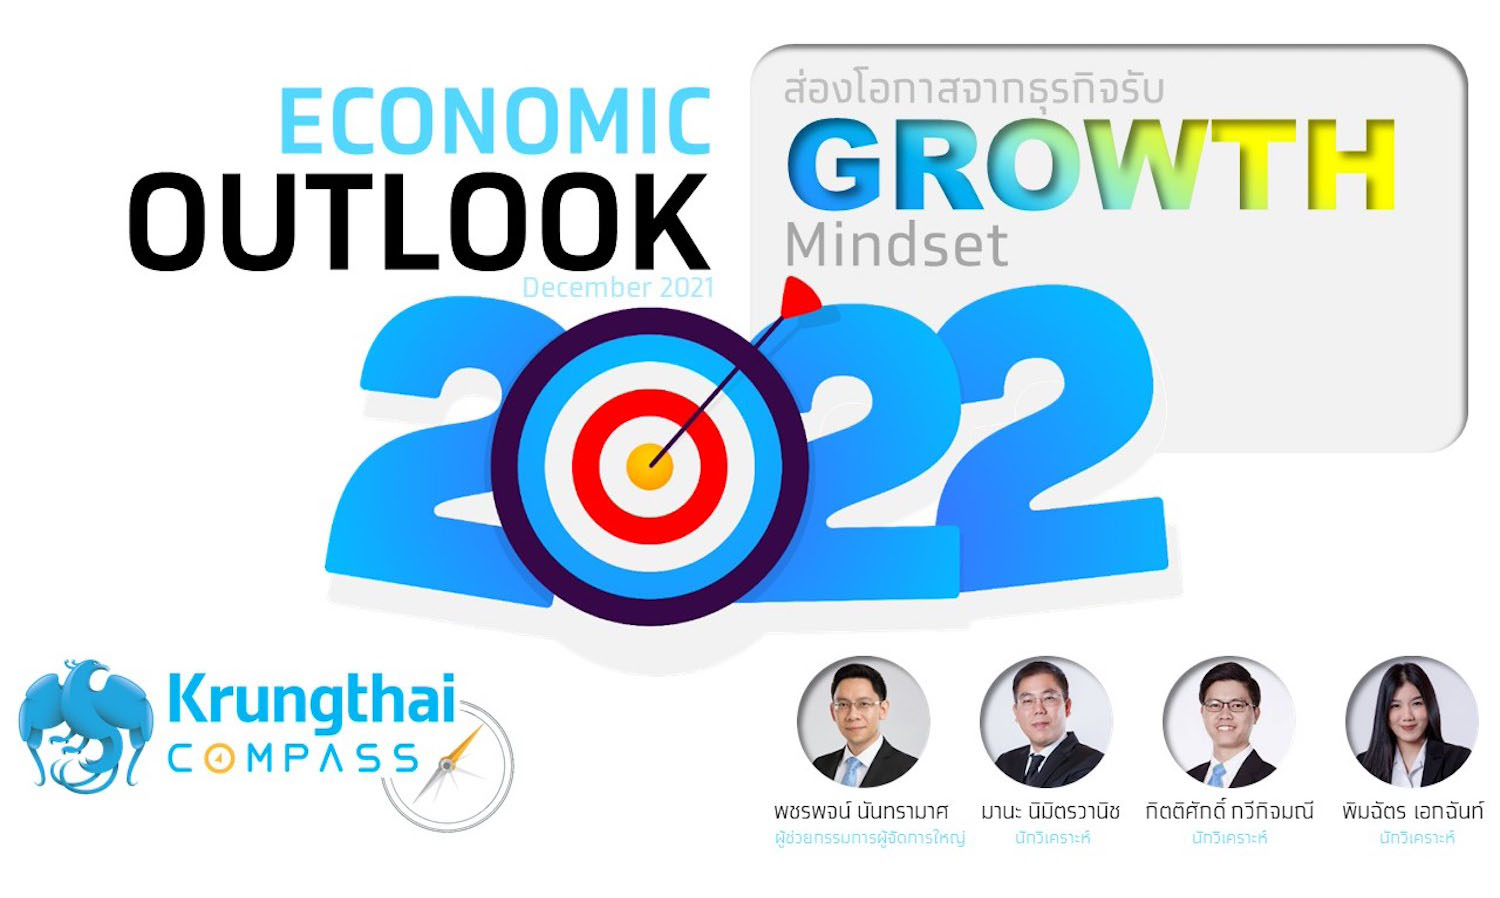 กรุงไทยประเมินเศรษฐกิจปี-2565-โตสูงขึ้นที่-3-8-ชี้เป็นจุดเริ่มต้นของการฟื้นตัวทางเศรษฐกิจ-แนะผู้ประกอบการปรับตัวรับแนวคิด-“growth”-ติดสปีดให้เศรษฐกิจไทย